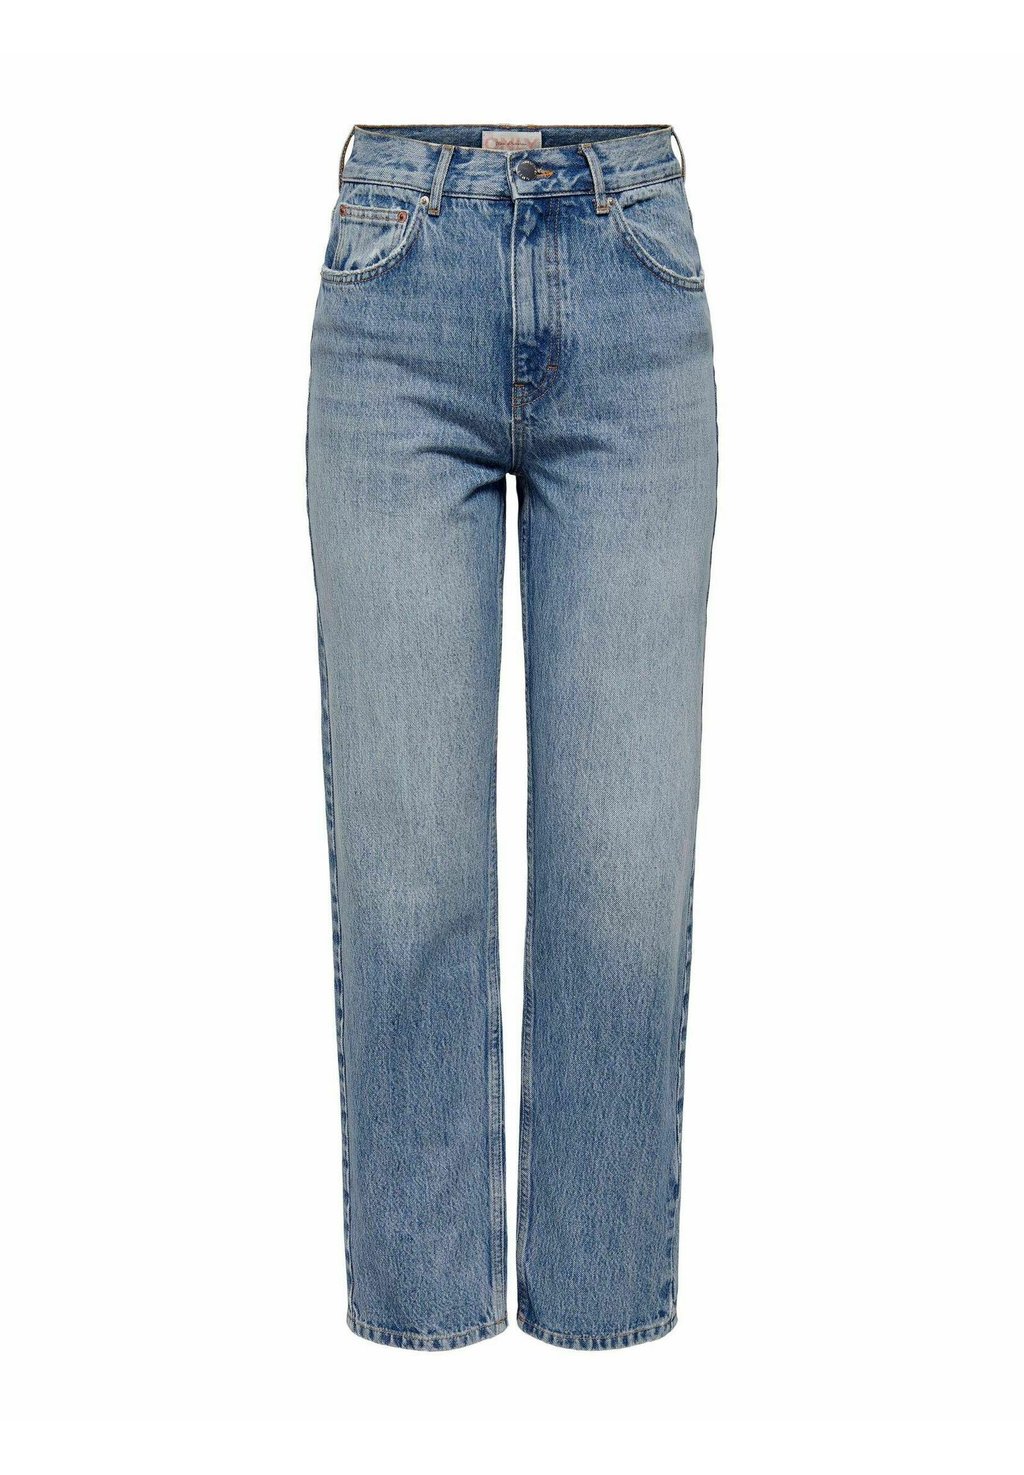 Расклешенные джинсы ONLY мюли larroude jackie цвет denim stoned blue